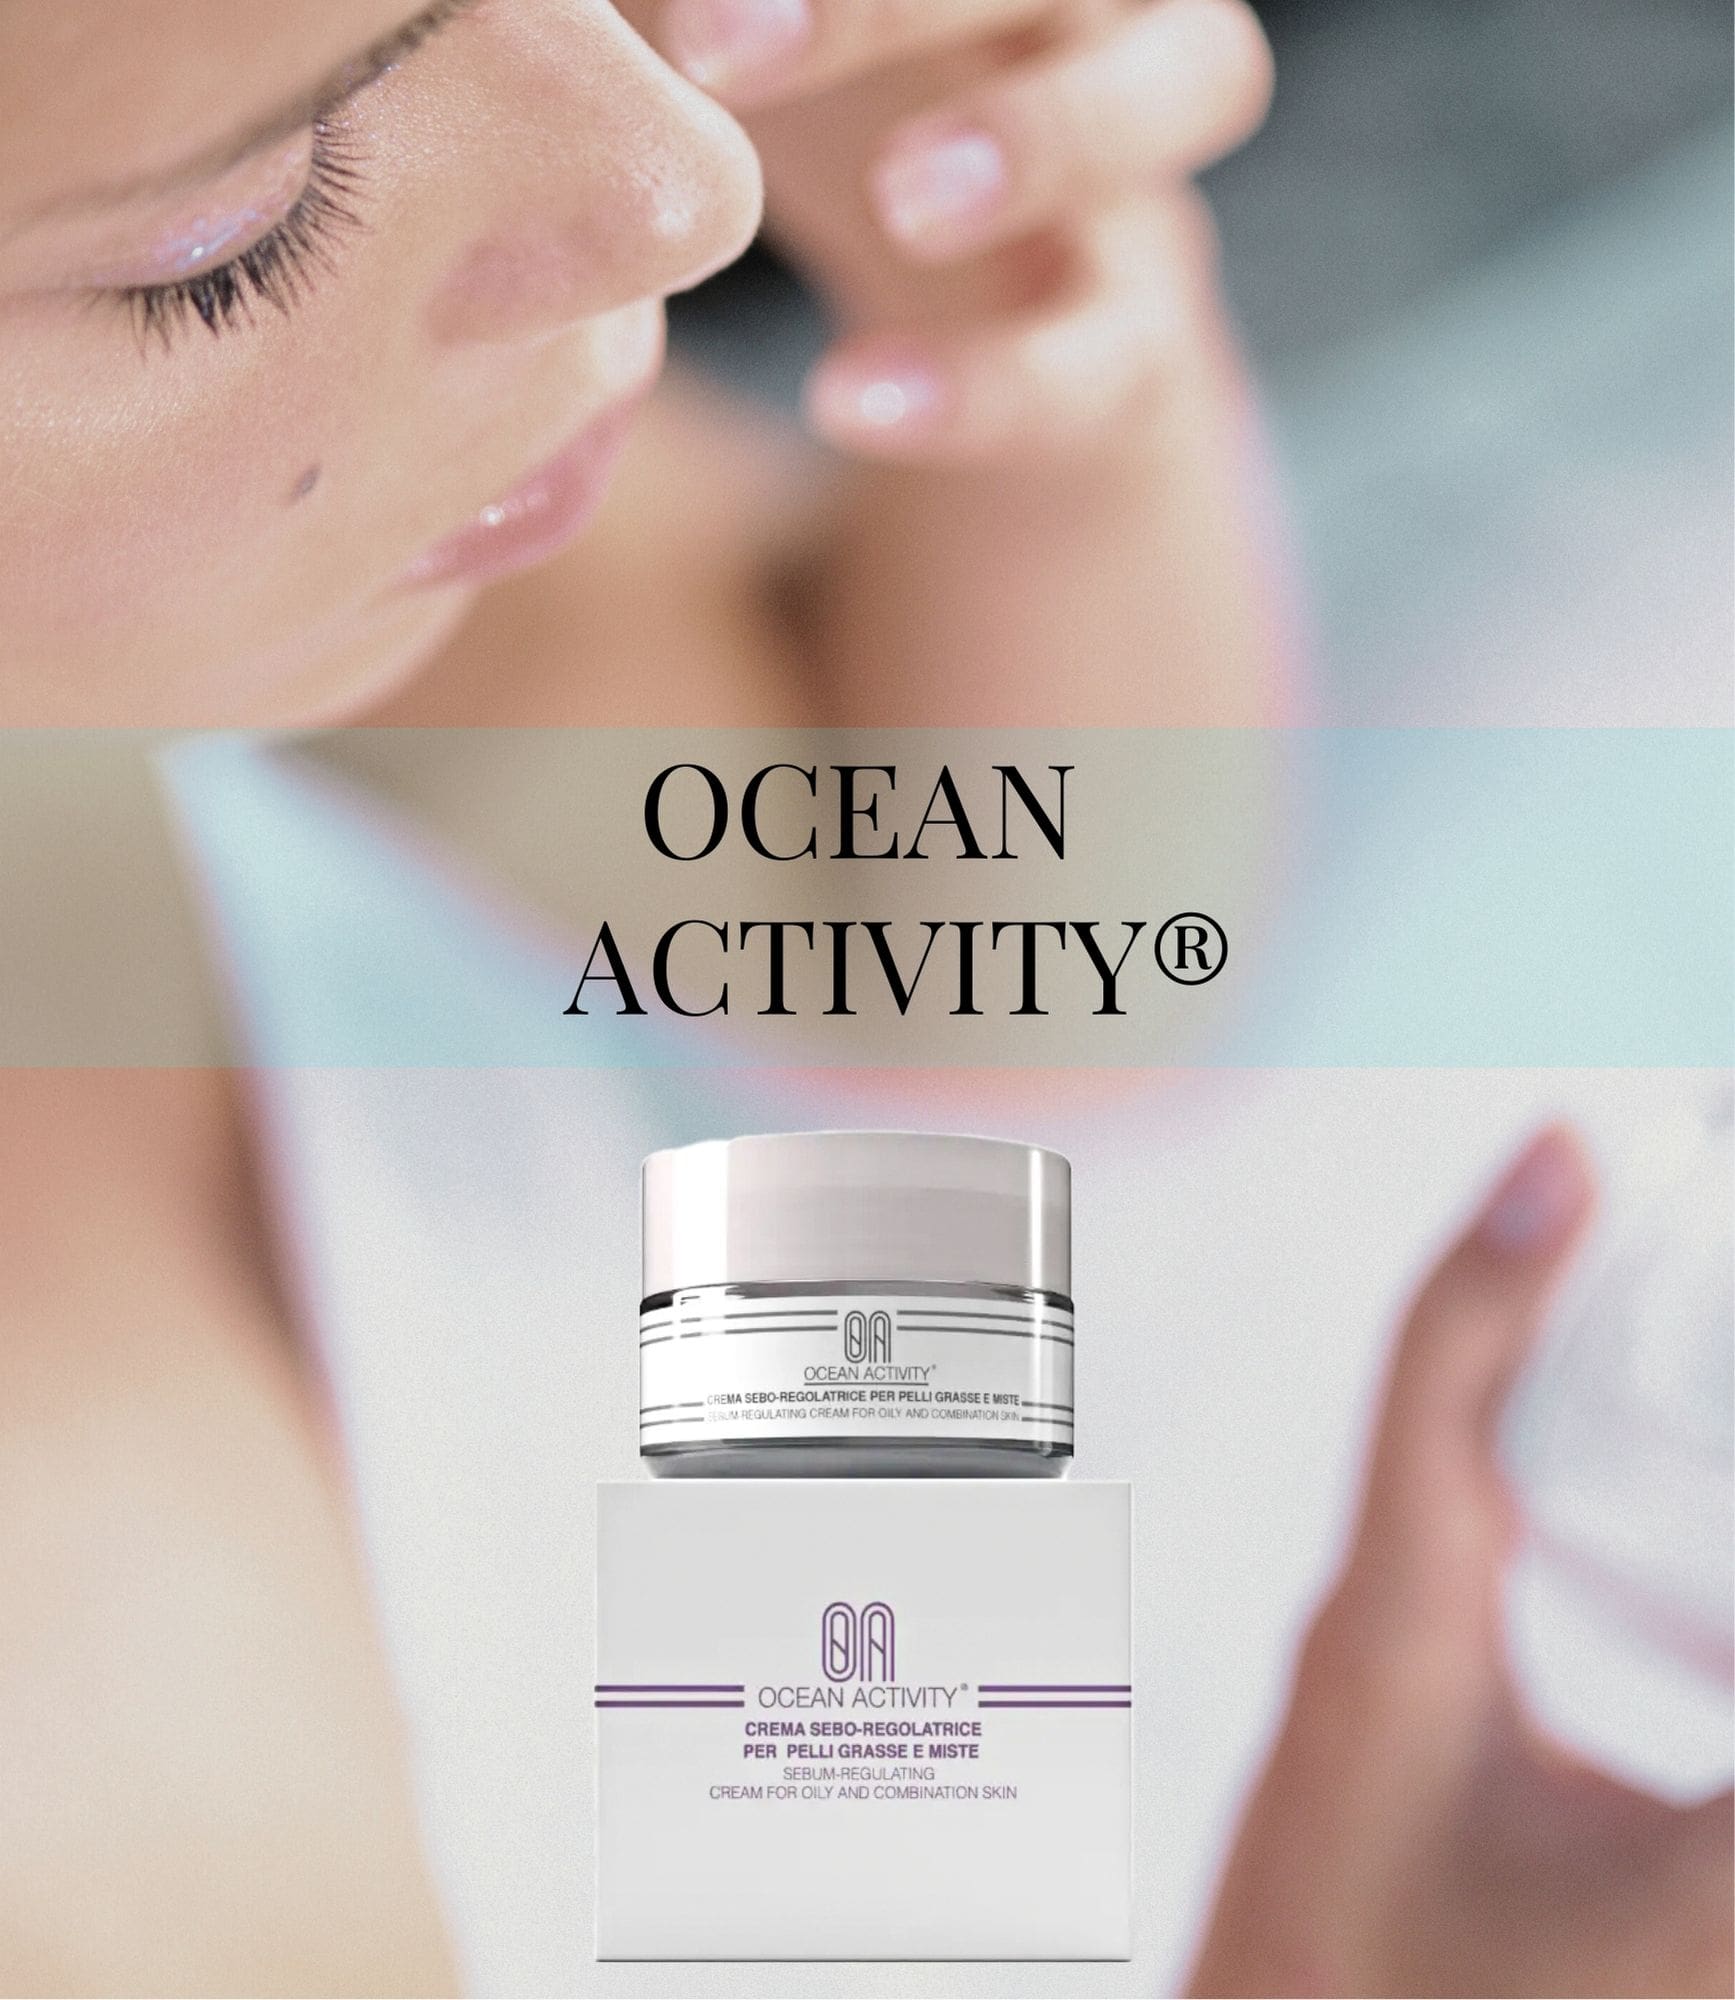 Ocean Activity® Crema seboregolatrice per pelli grasse e miste